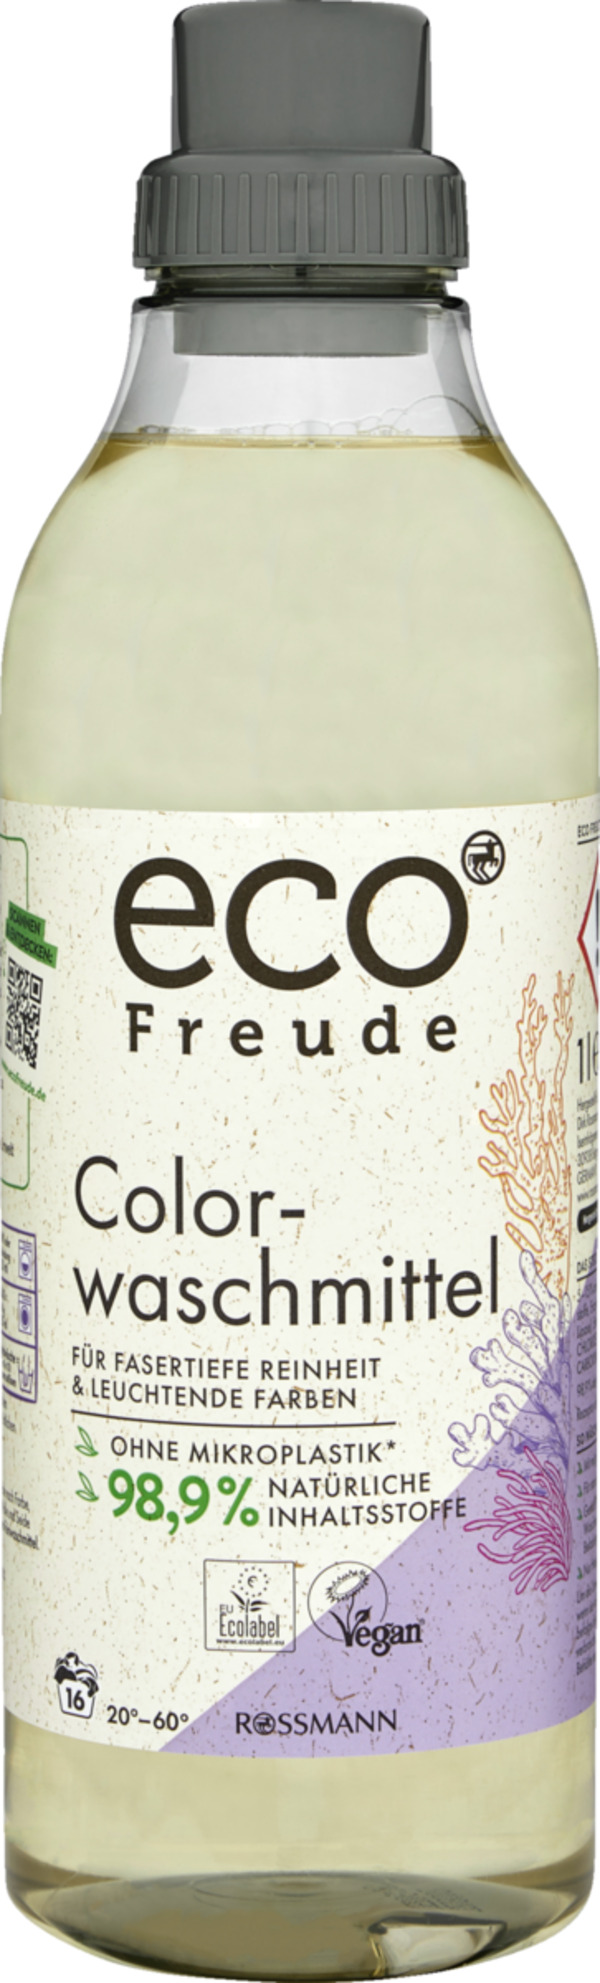 Bild 1 von eco Freude Colorwaschmittel 16 WL